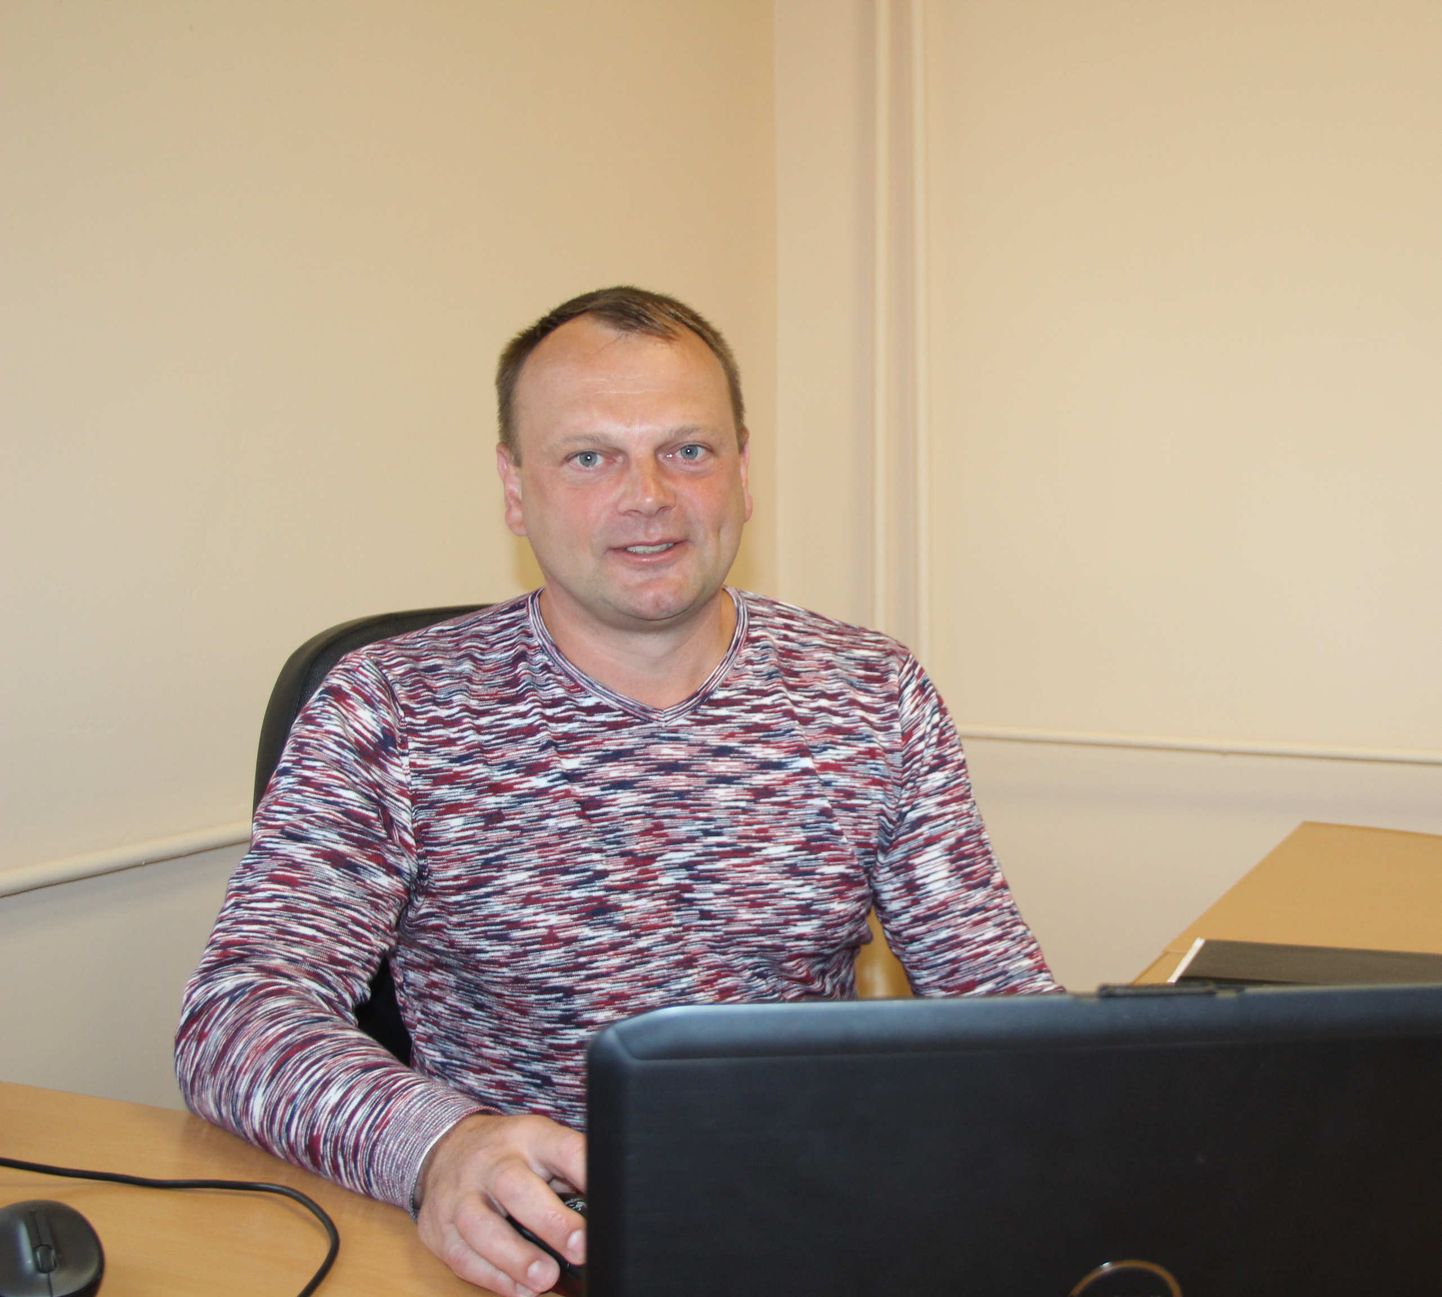 Alates 10. veebruarist on Otepää vallavalitsuses 0,5 koormusega tööl uus spordispetsialist Tanel Allas.